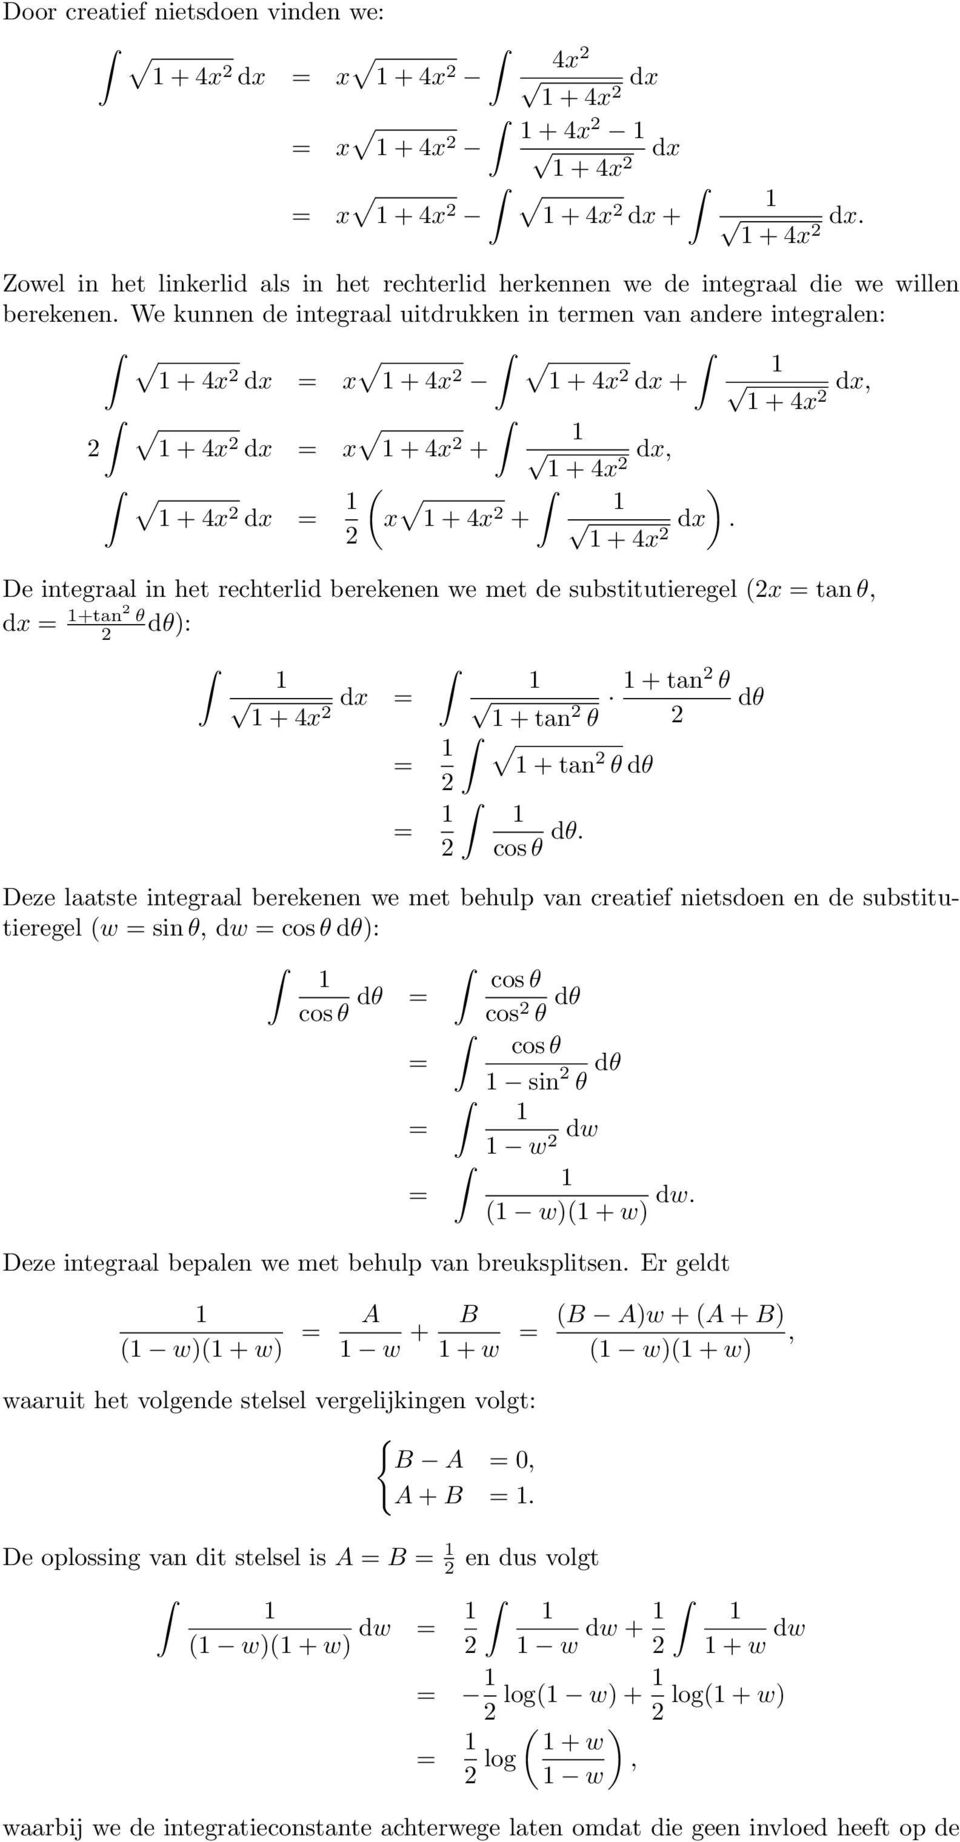 + 4 De integraal in het rechterlid berekenen we met de substitutieregel tan θ, d +tan θ dθ: d + 4 + tan θ + tan θ dθ + tan θ dθ cos θ dθ.